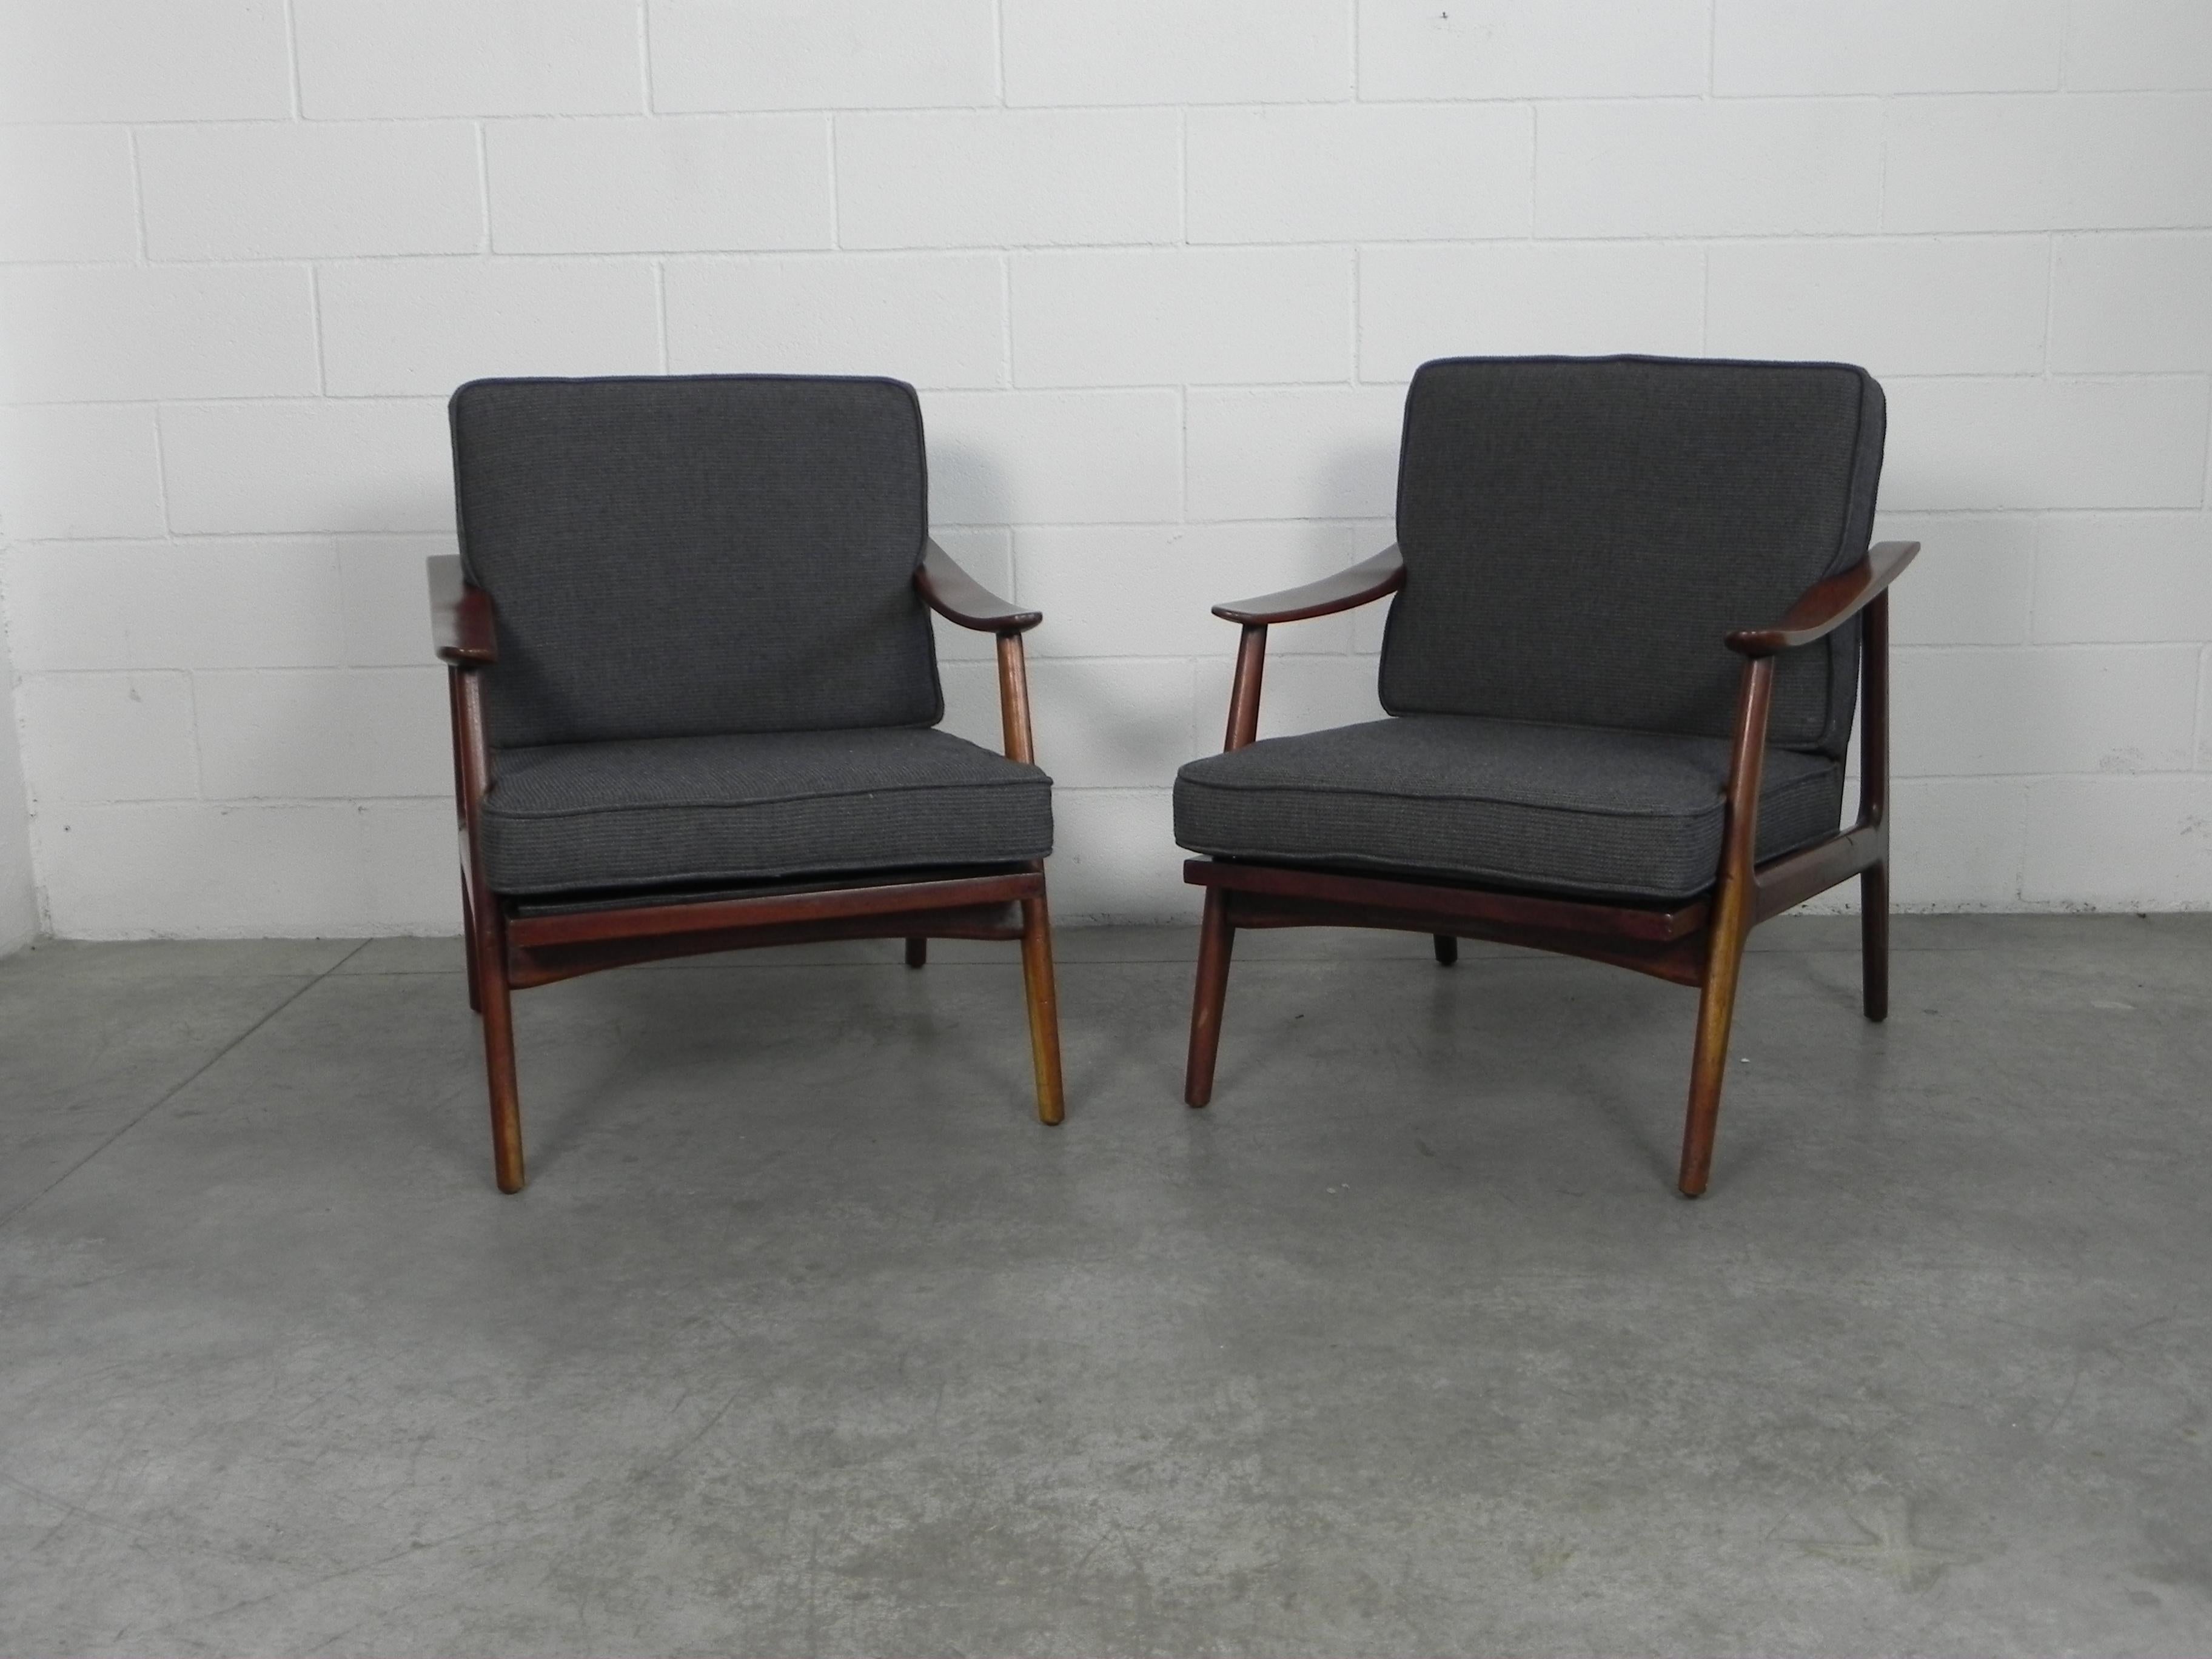 Ensemble de fauteuils élégants et stylés conçus par Arne Vodder dans les années 1950.